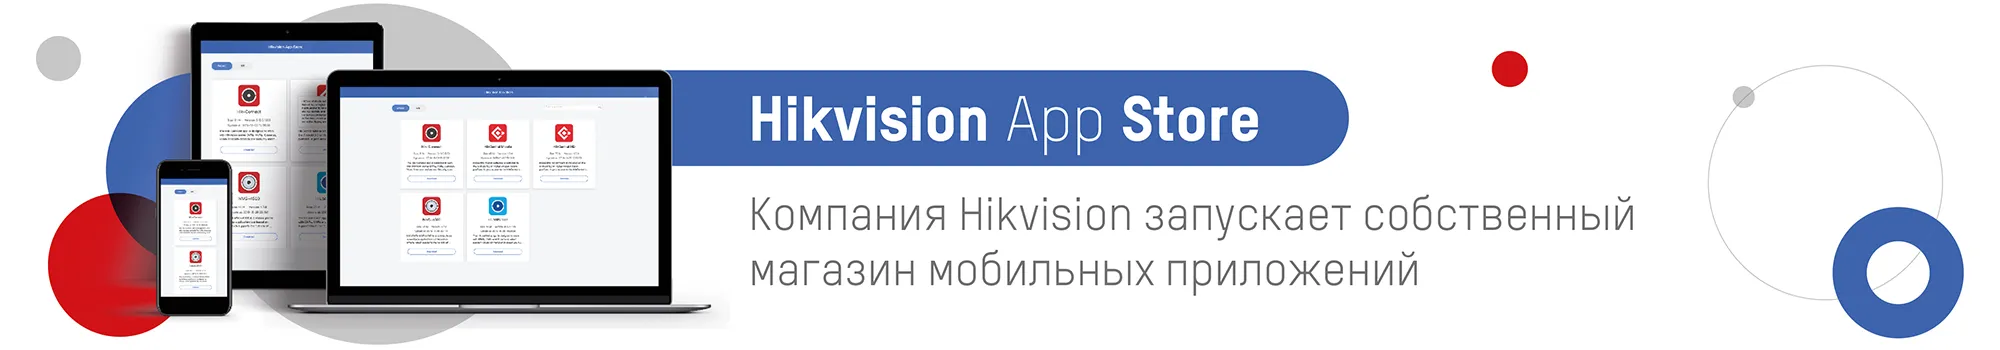 Компания Hikvision запускает собственный магазин мобильных приложений